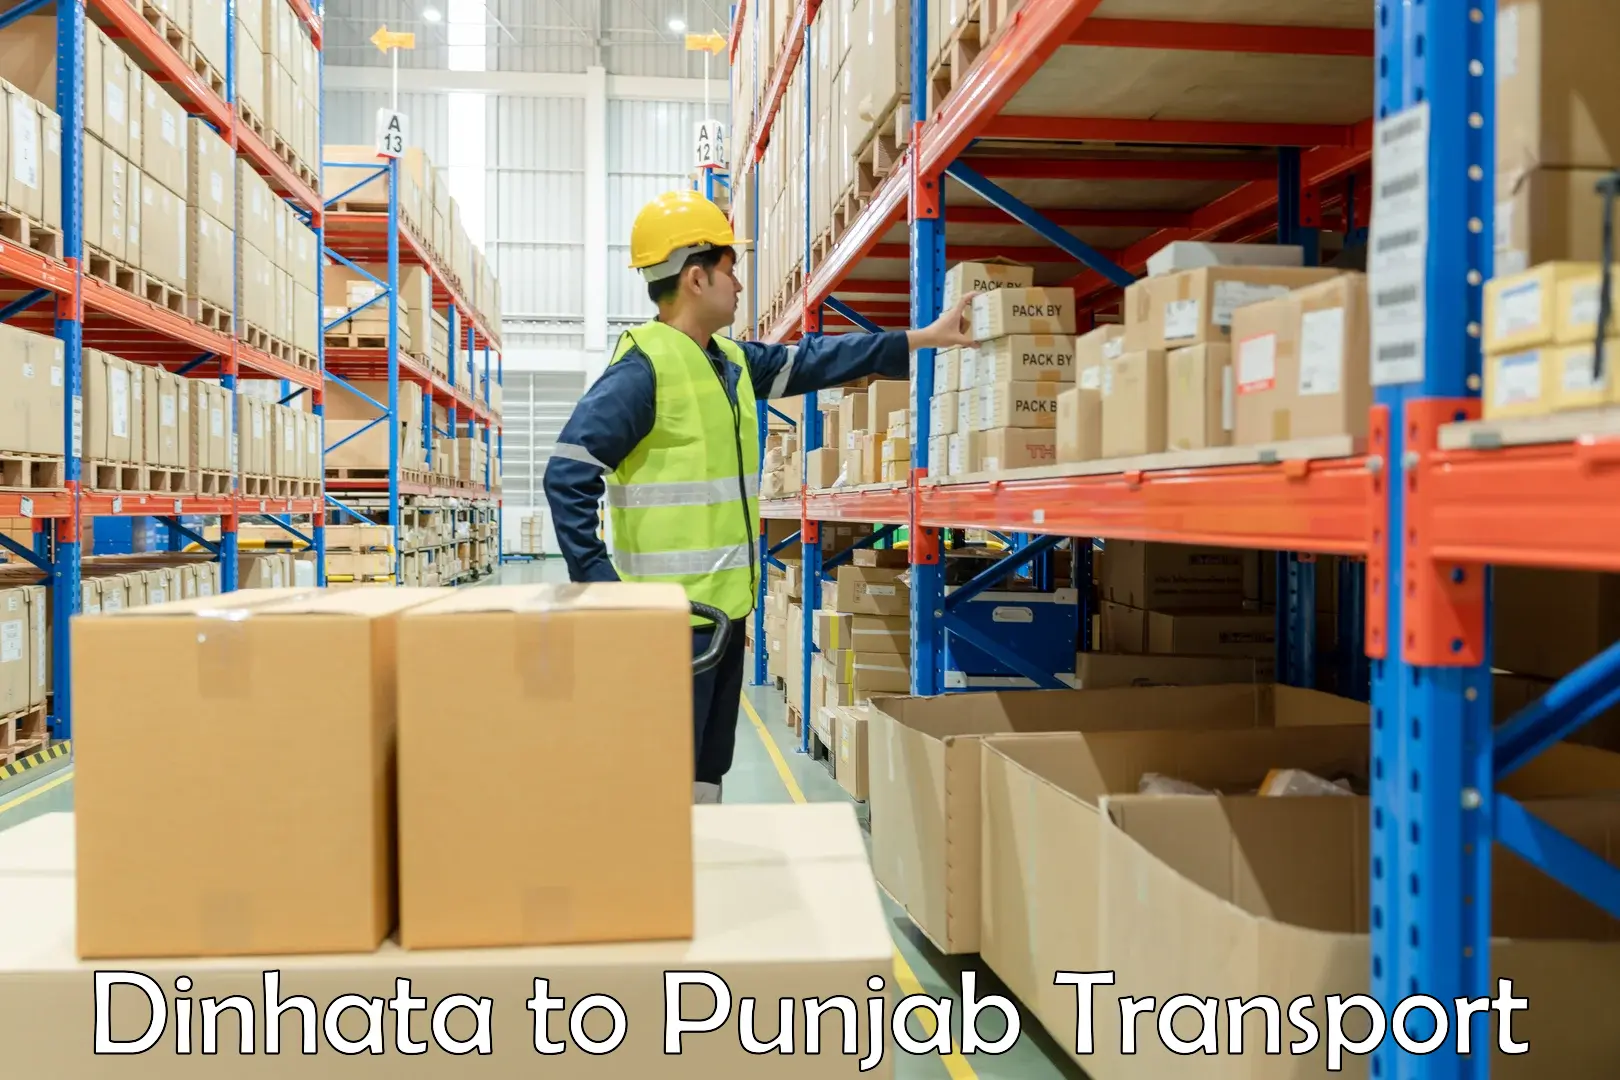 Cargo train transport services Dinhata to Batala